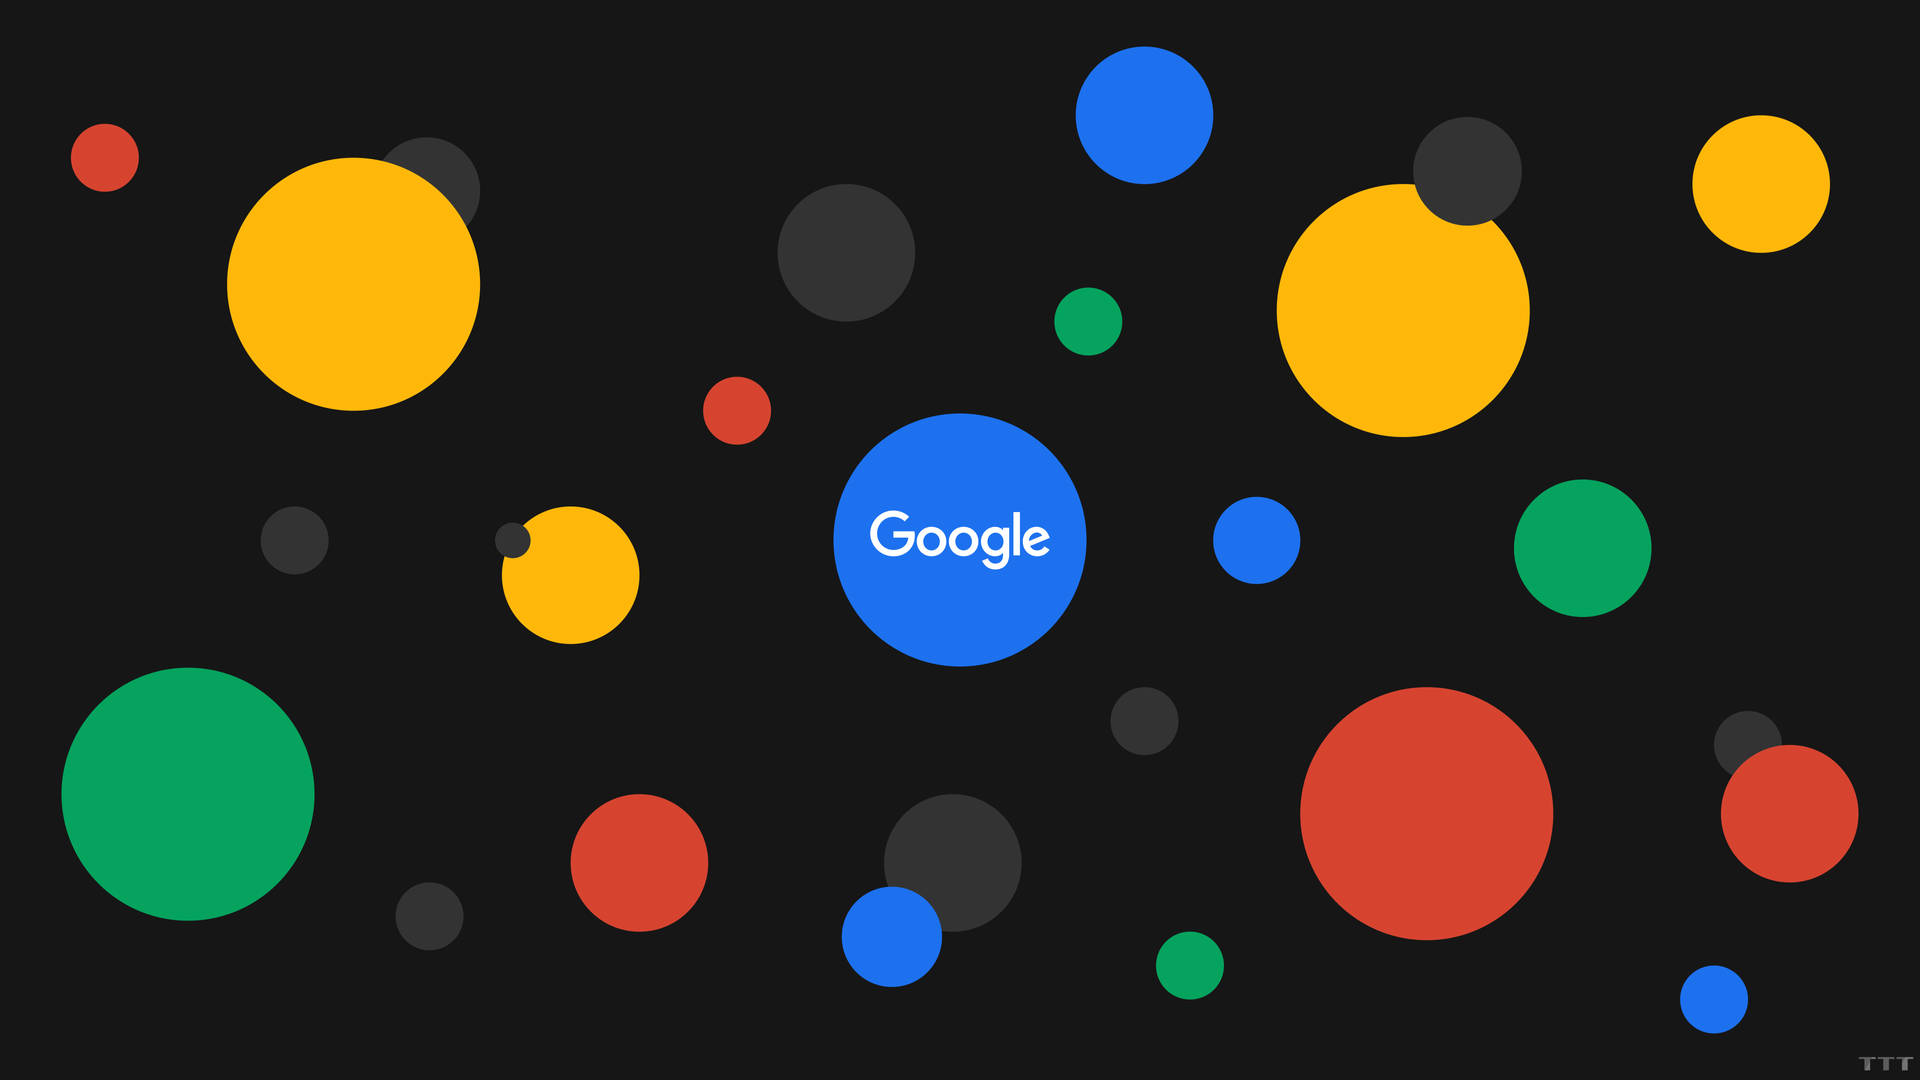 Hình nền Google là một quà tặng tuyệt vời dành cho những ai yêu thích trải nghiệm trên Internet. Các hình nền được thiết kế đơn giản nhưng đầy ấn tượng và phù hợp với nhiều sở thích khác nhau của người dùng. Nhấn vào ảnh liên quan để tìm hiểu thêm về những hình nền Google đẹp mắt và tiện dụng!